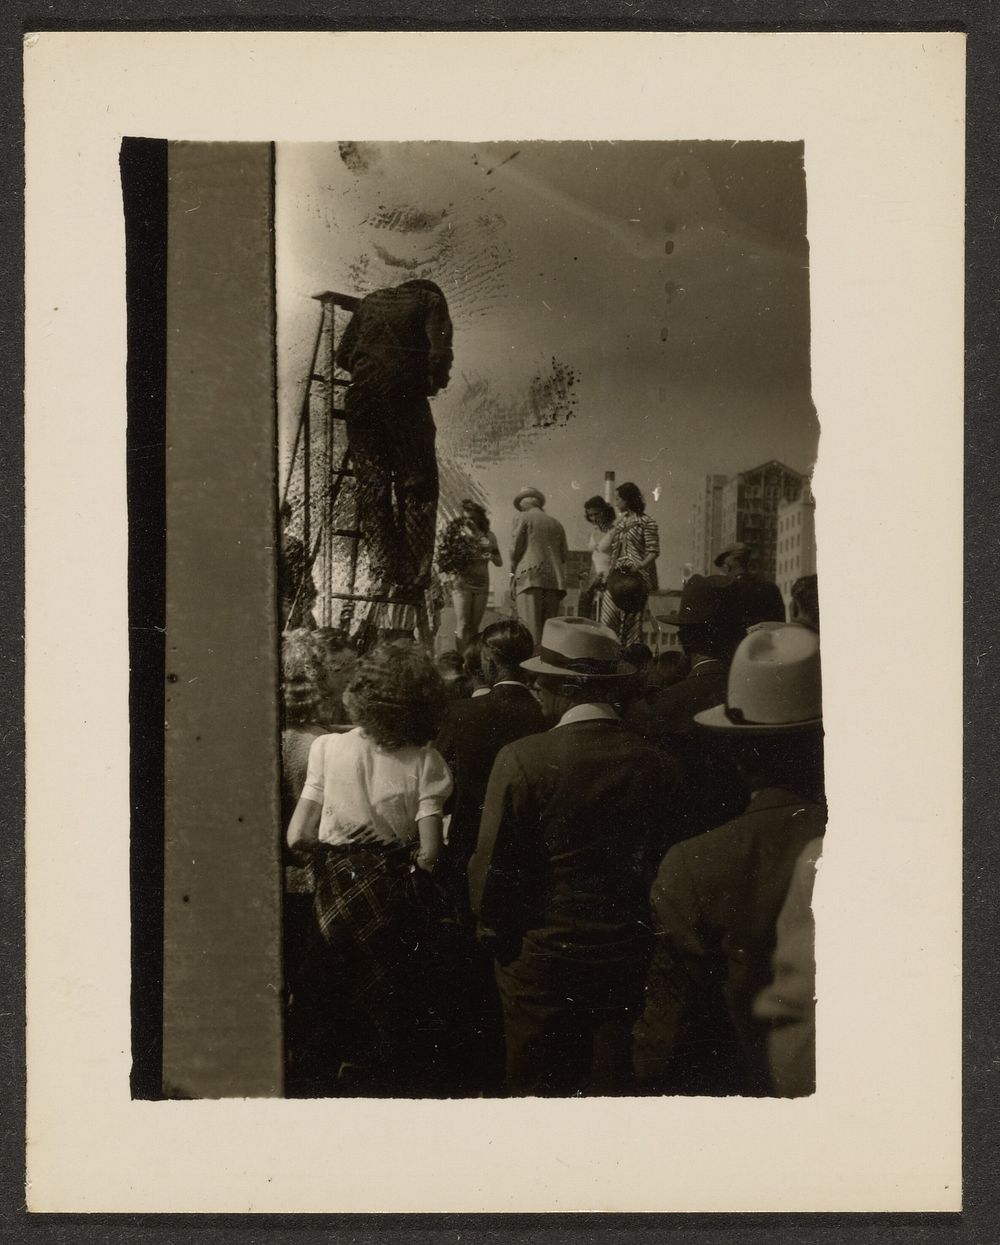 Crowd with Man on Ladder by Louis Fleckenstein